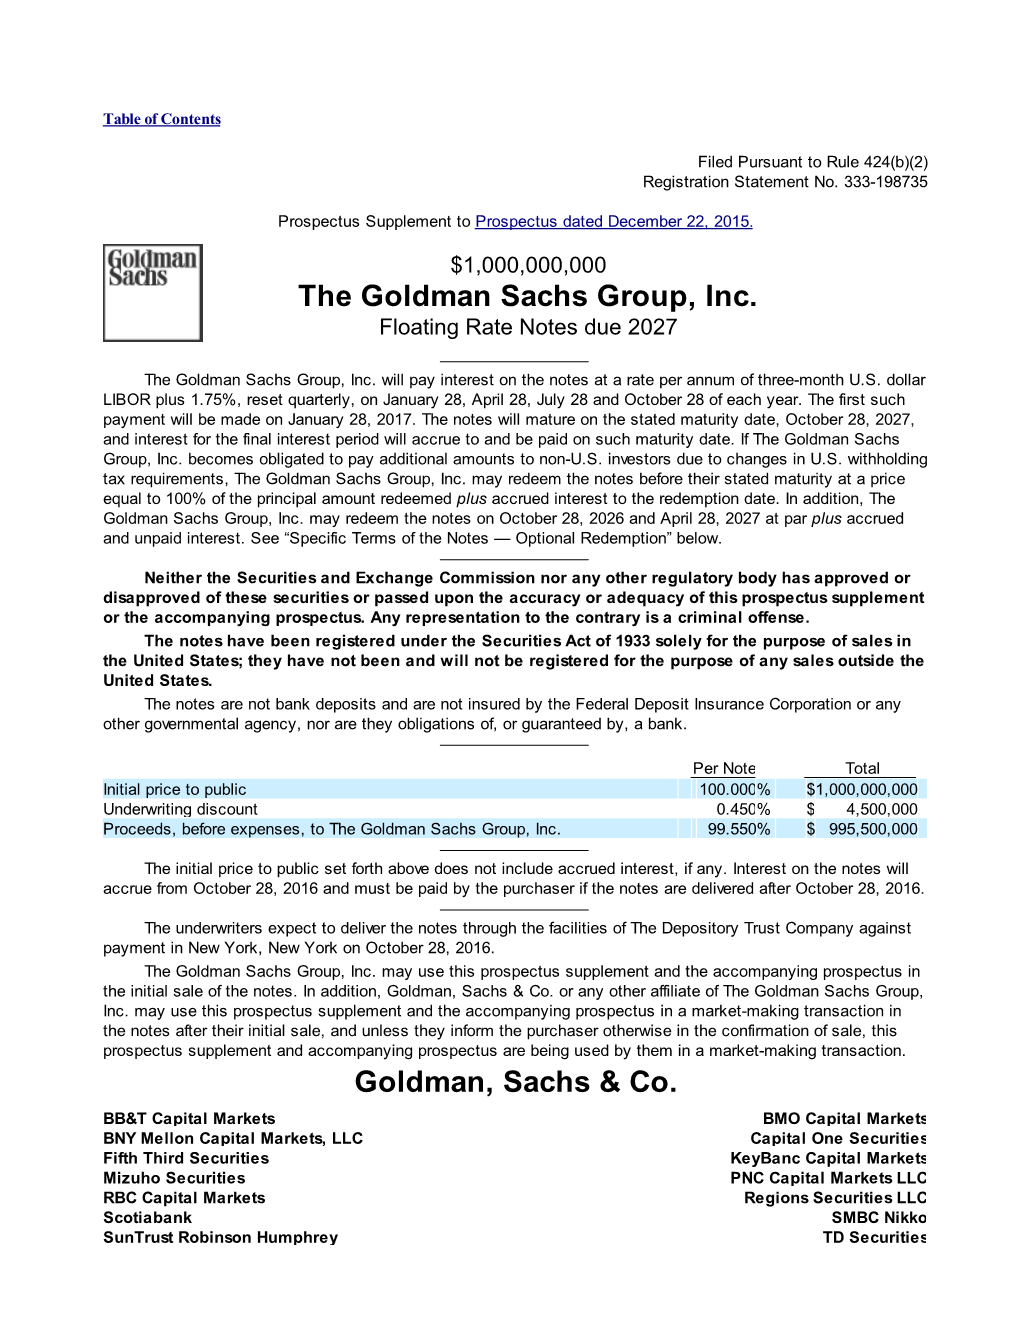 Goldman, Sachs & Co. the Goldman Sachs Group, Inc